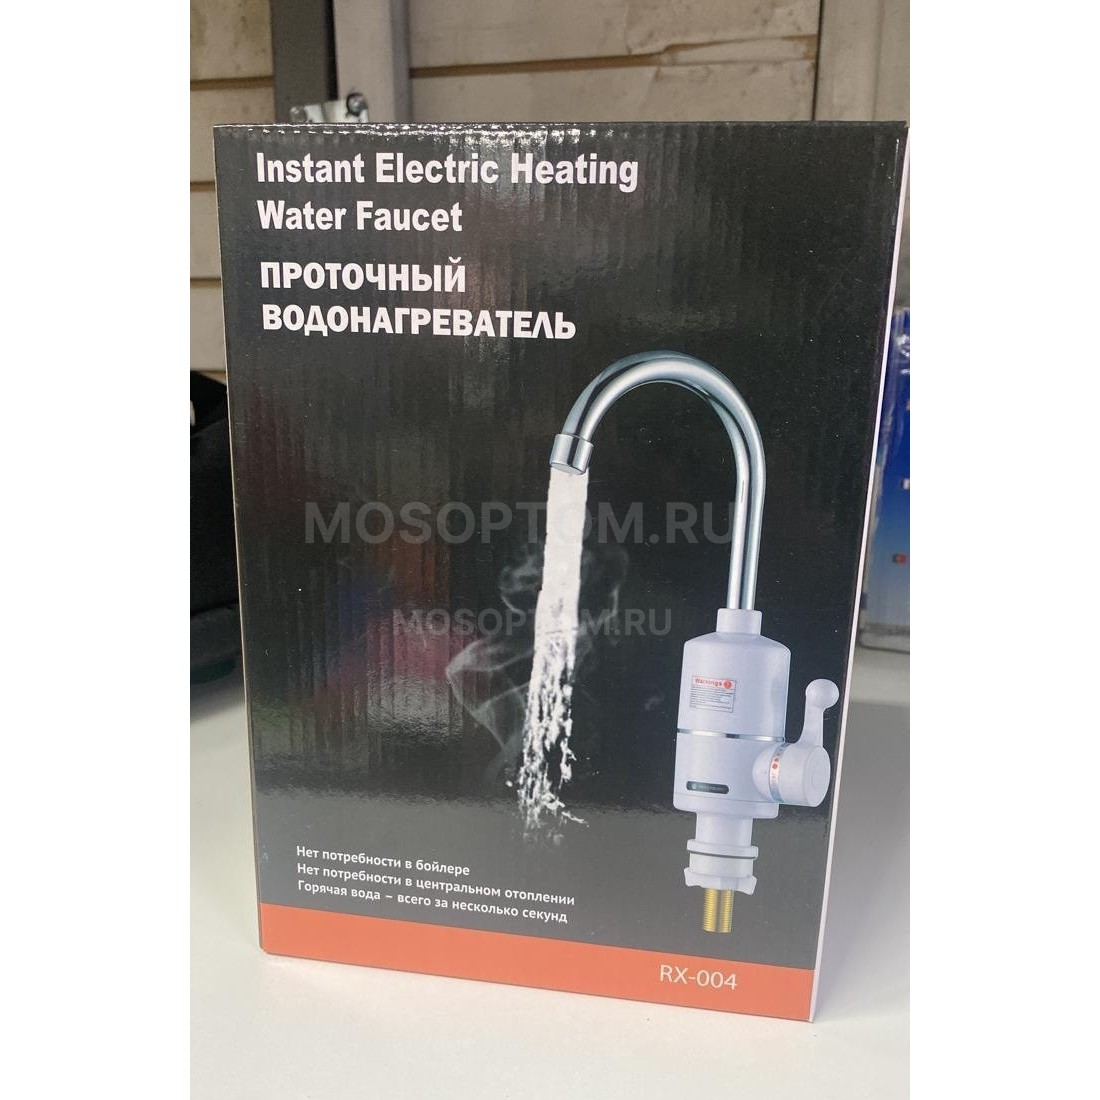 Проточный водонагреватель Instant Electric Heating Water Faucet RX-004 оптом